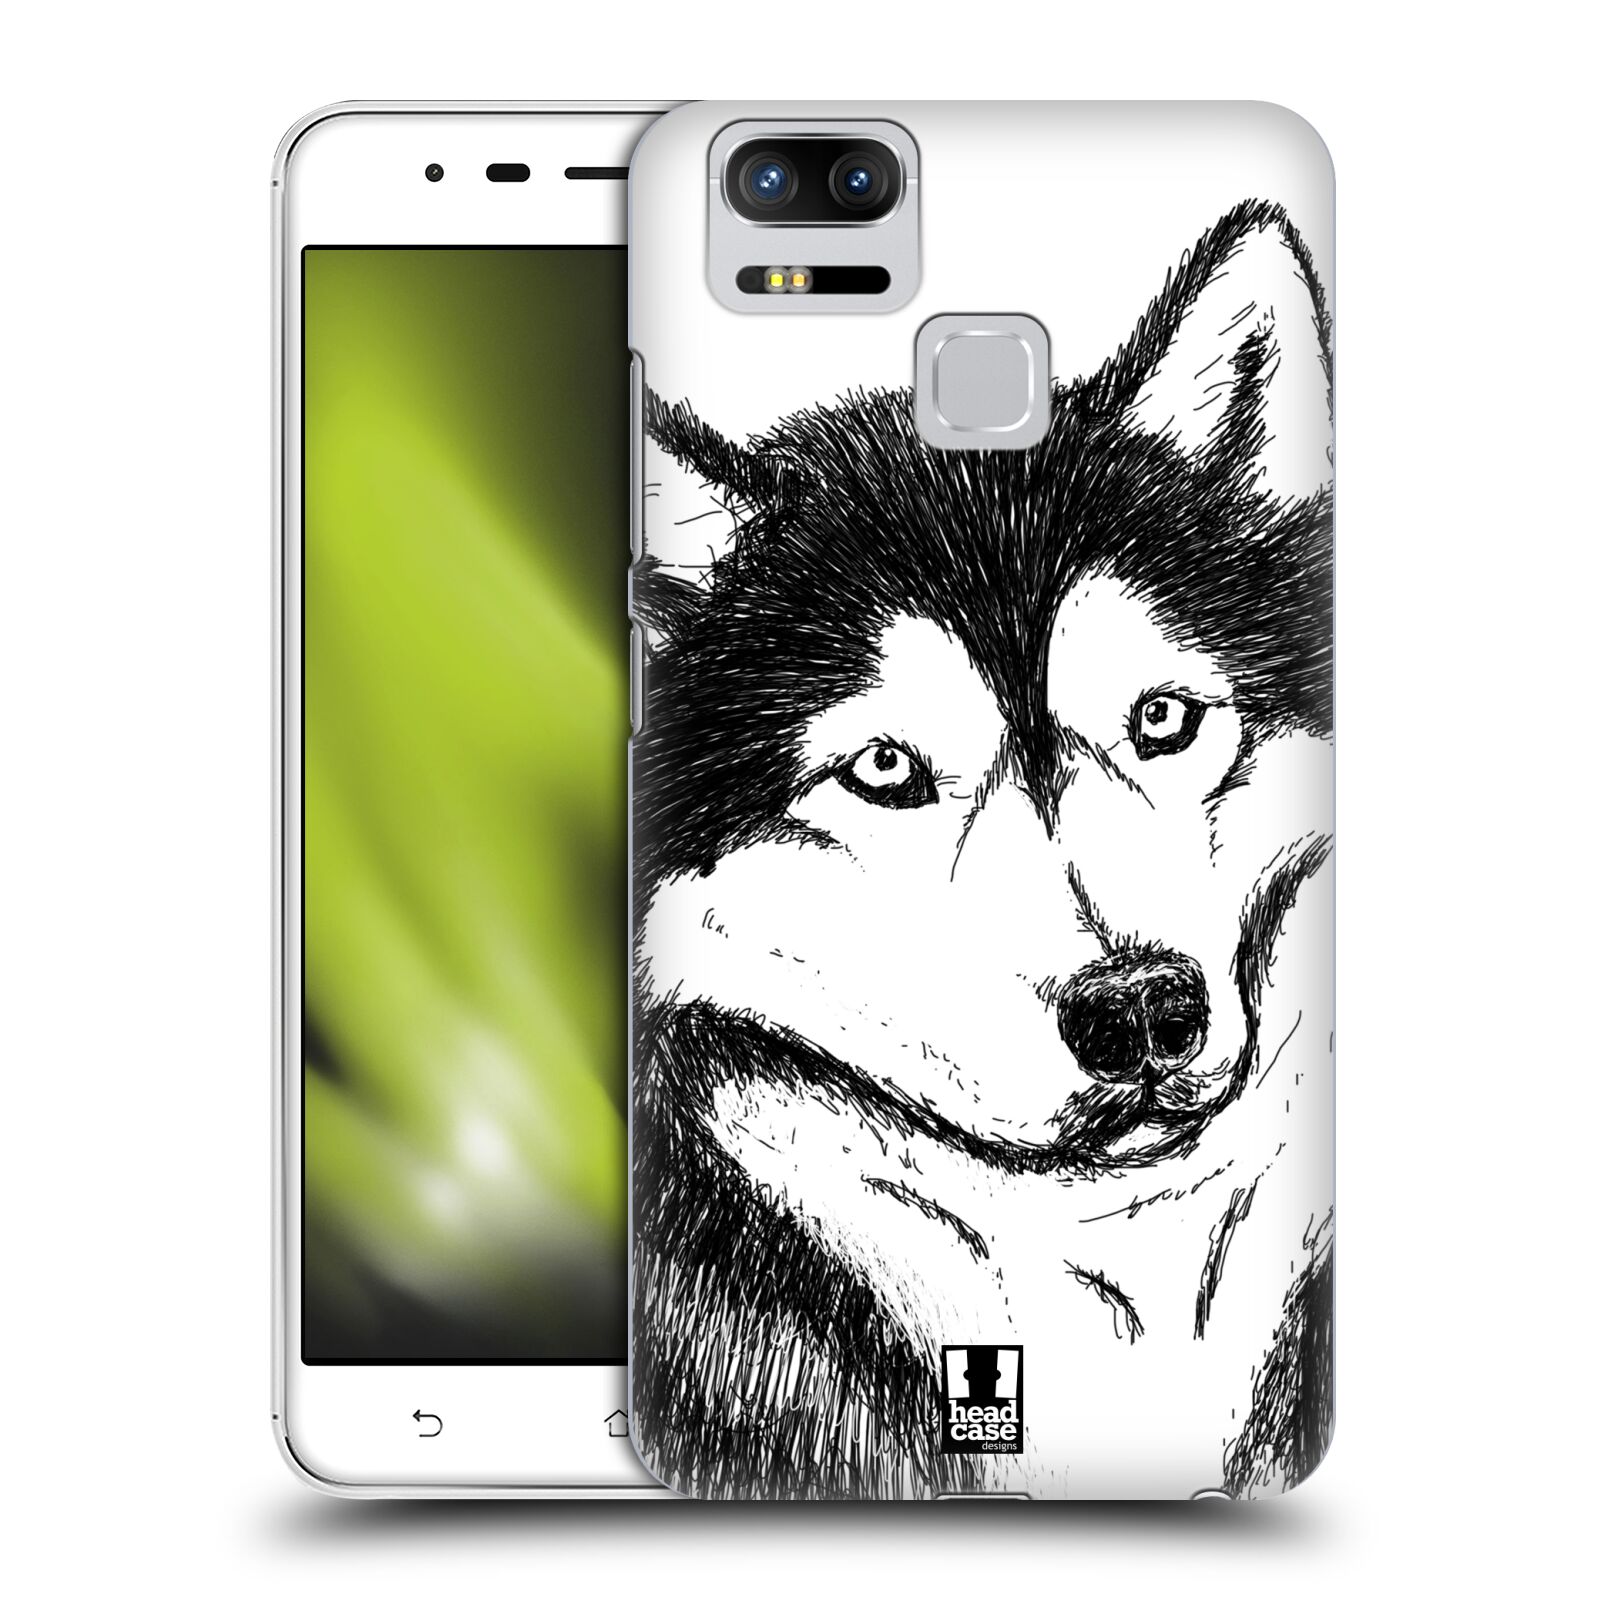 HEAD CASE plastový obal na mobil Asus Zenfone 3 Zoom ZE553KL vzor Kreslená zvířátka černá a bílá pes husky